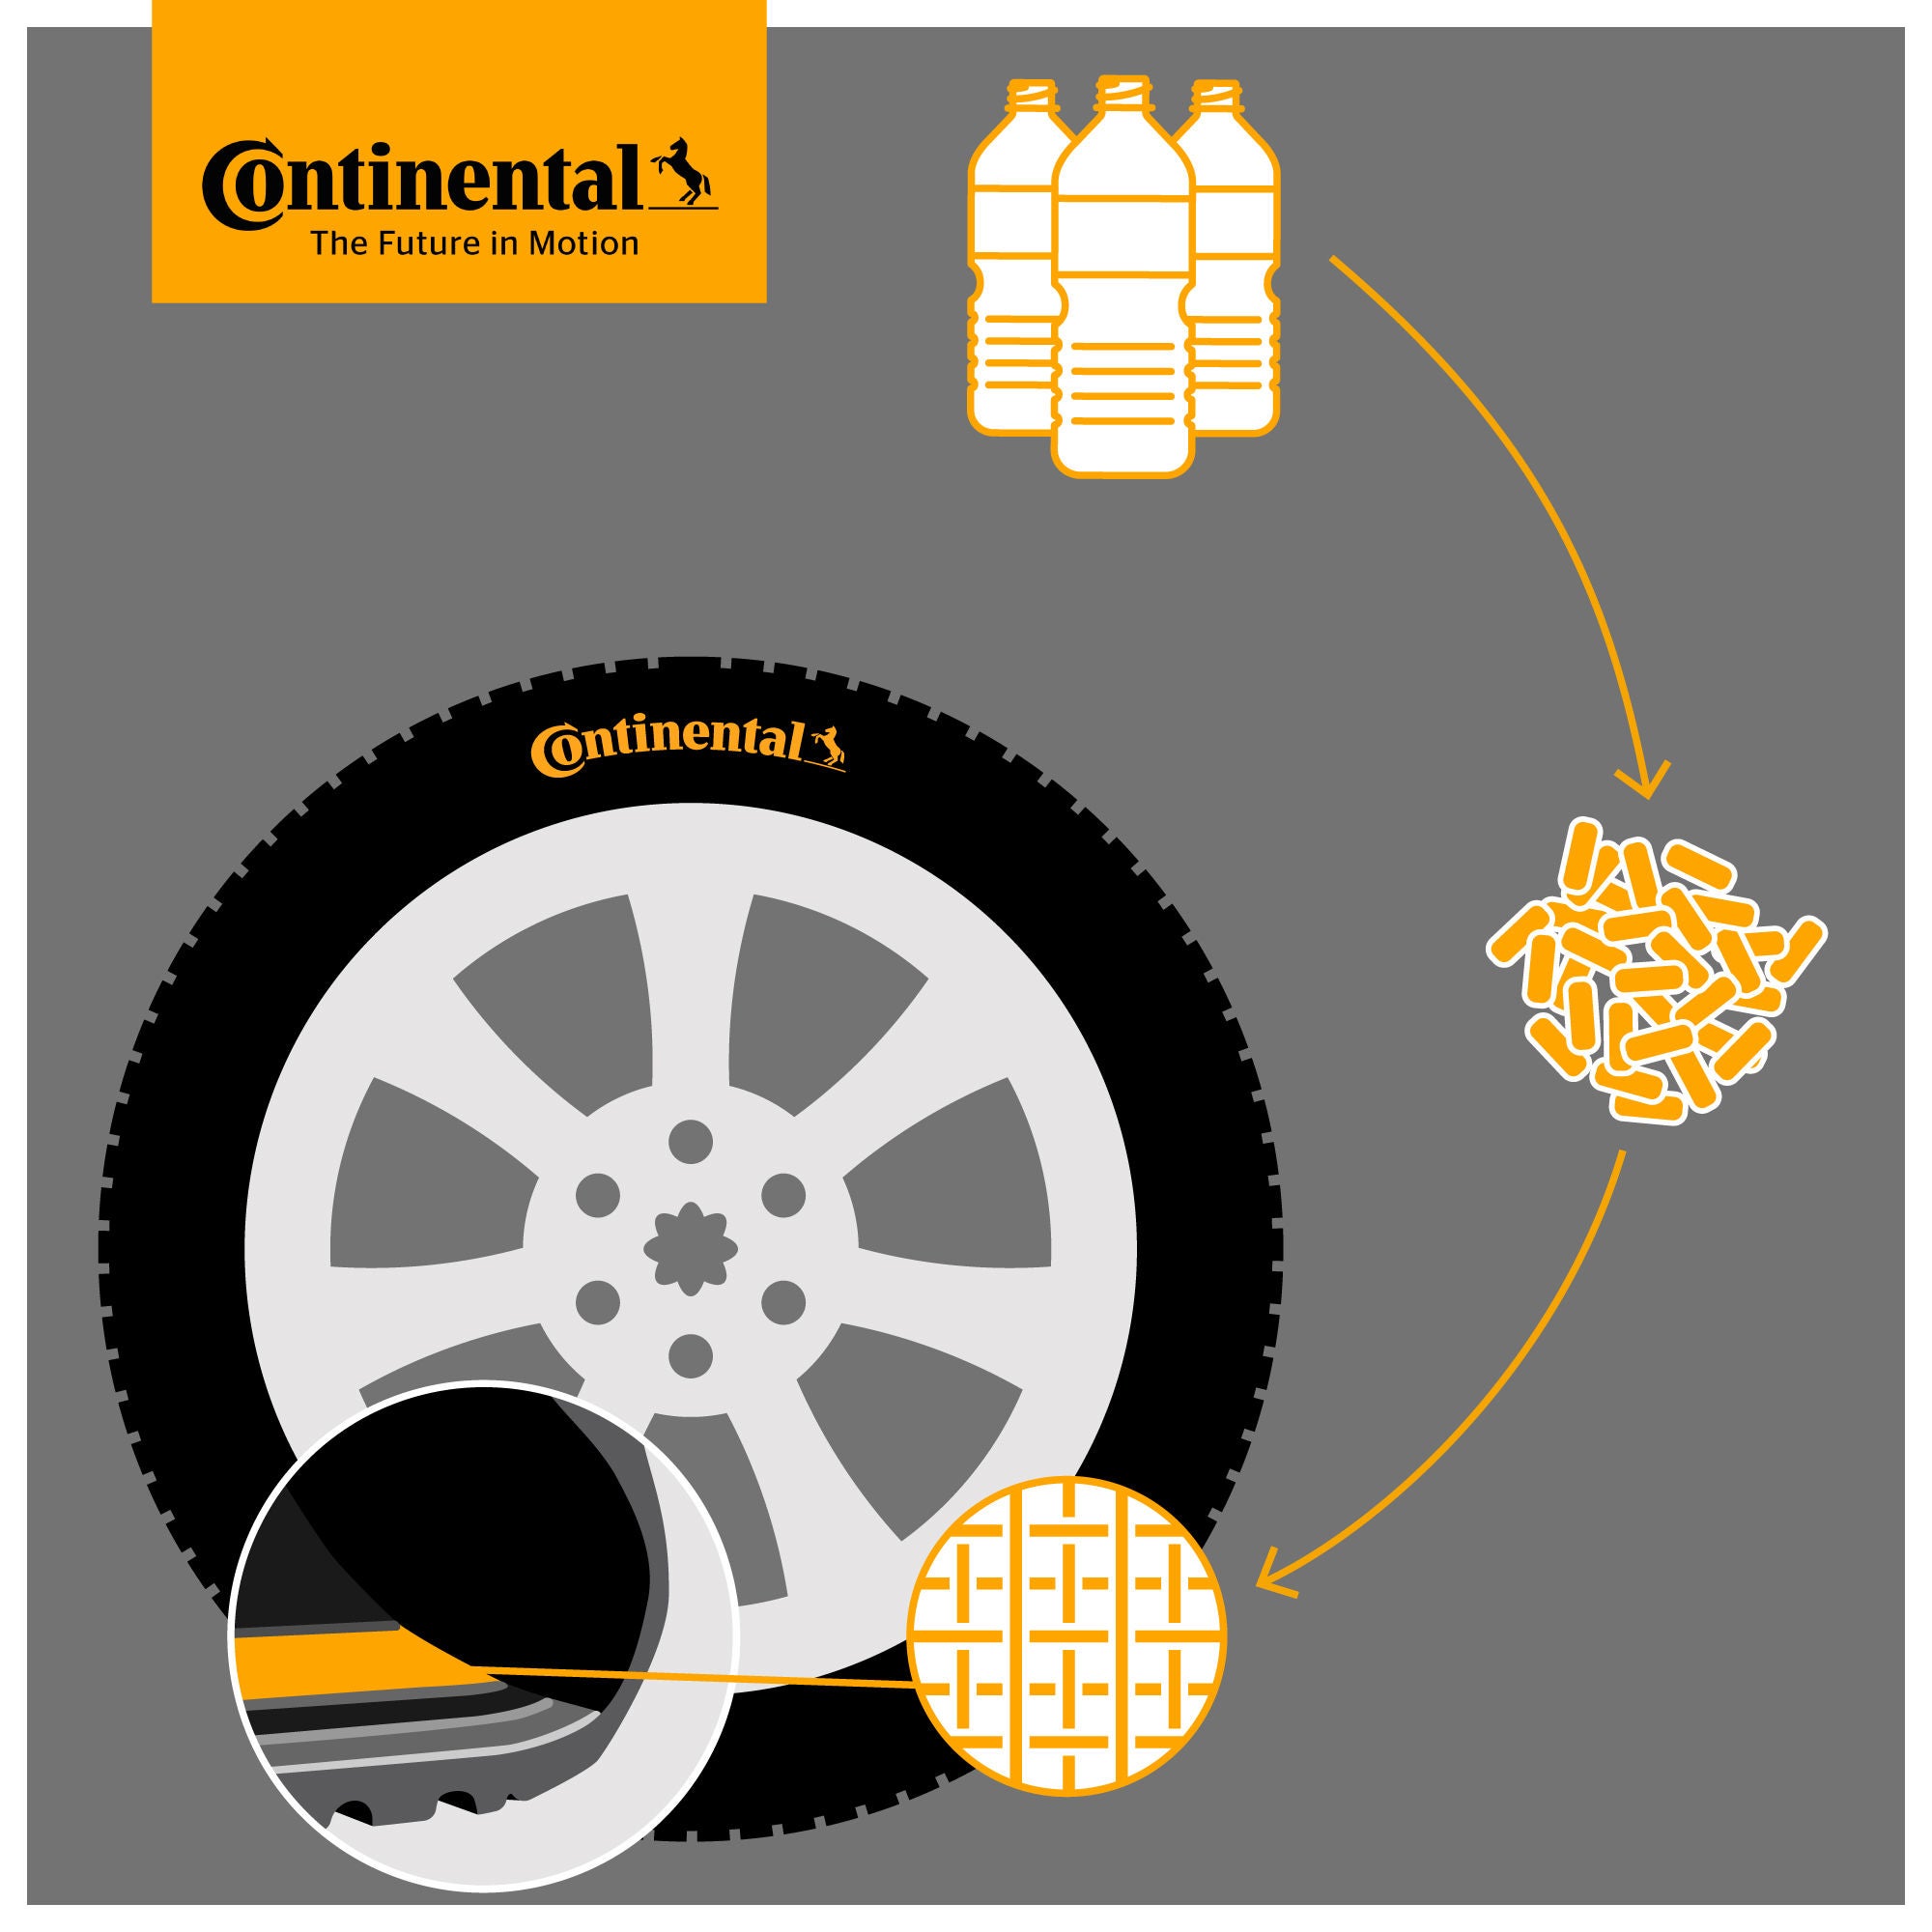 (ilustração de garrafas pets com seta indicando ciclo para desenho de matéria prima, posteriormente close no material pronto sendo utilizado em um pneu Continental)